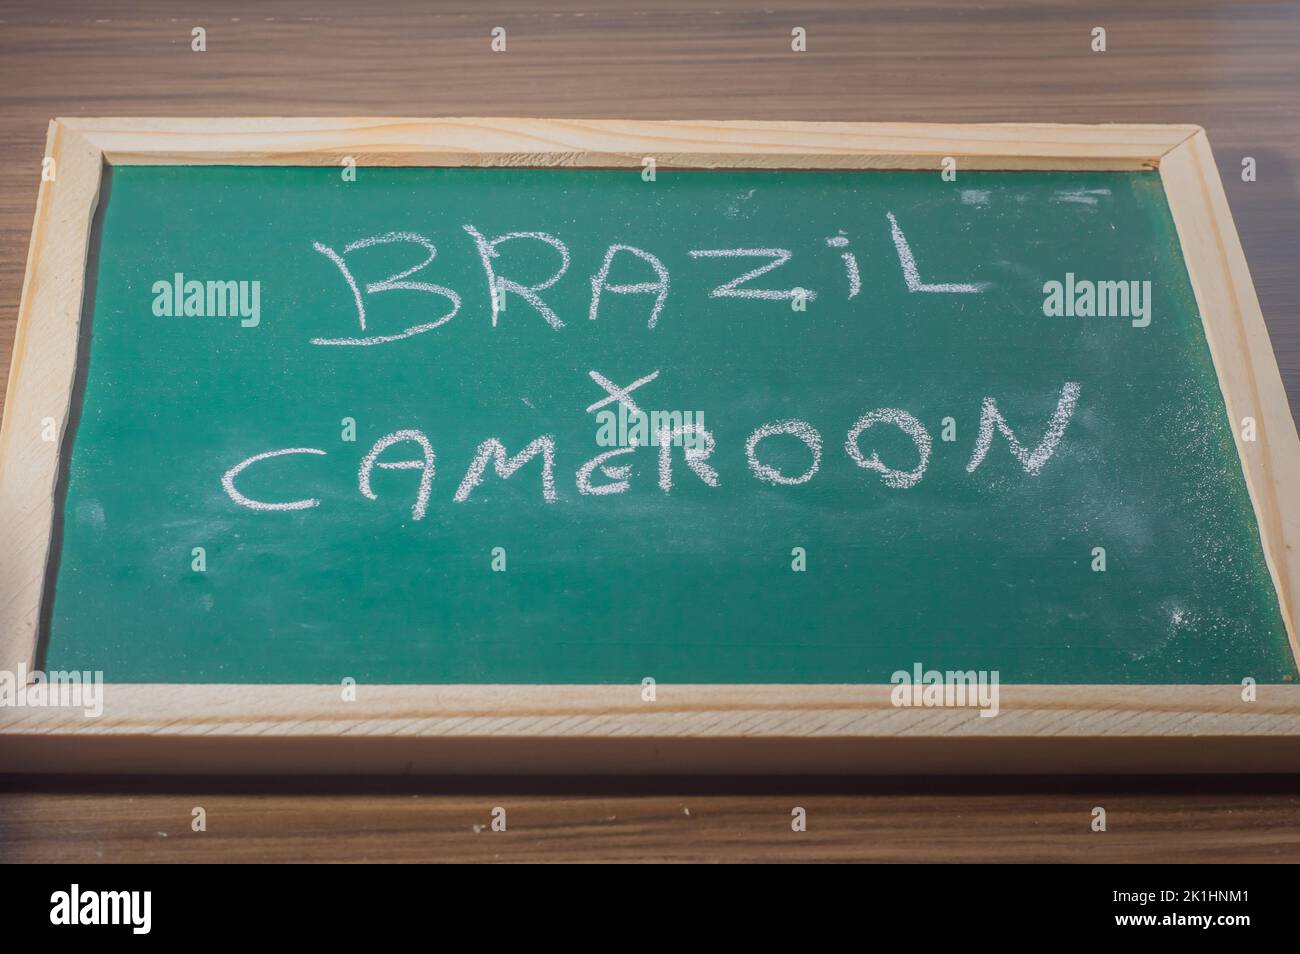 Tableau vert écrit 'Brésil x Camerron' avec une craie blanche, concept de confrontation entre pays, football. Banque D'Images